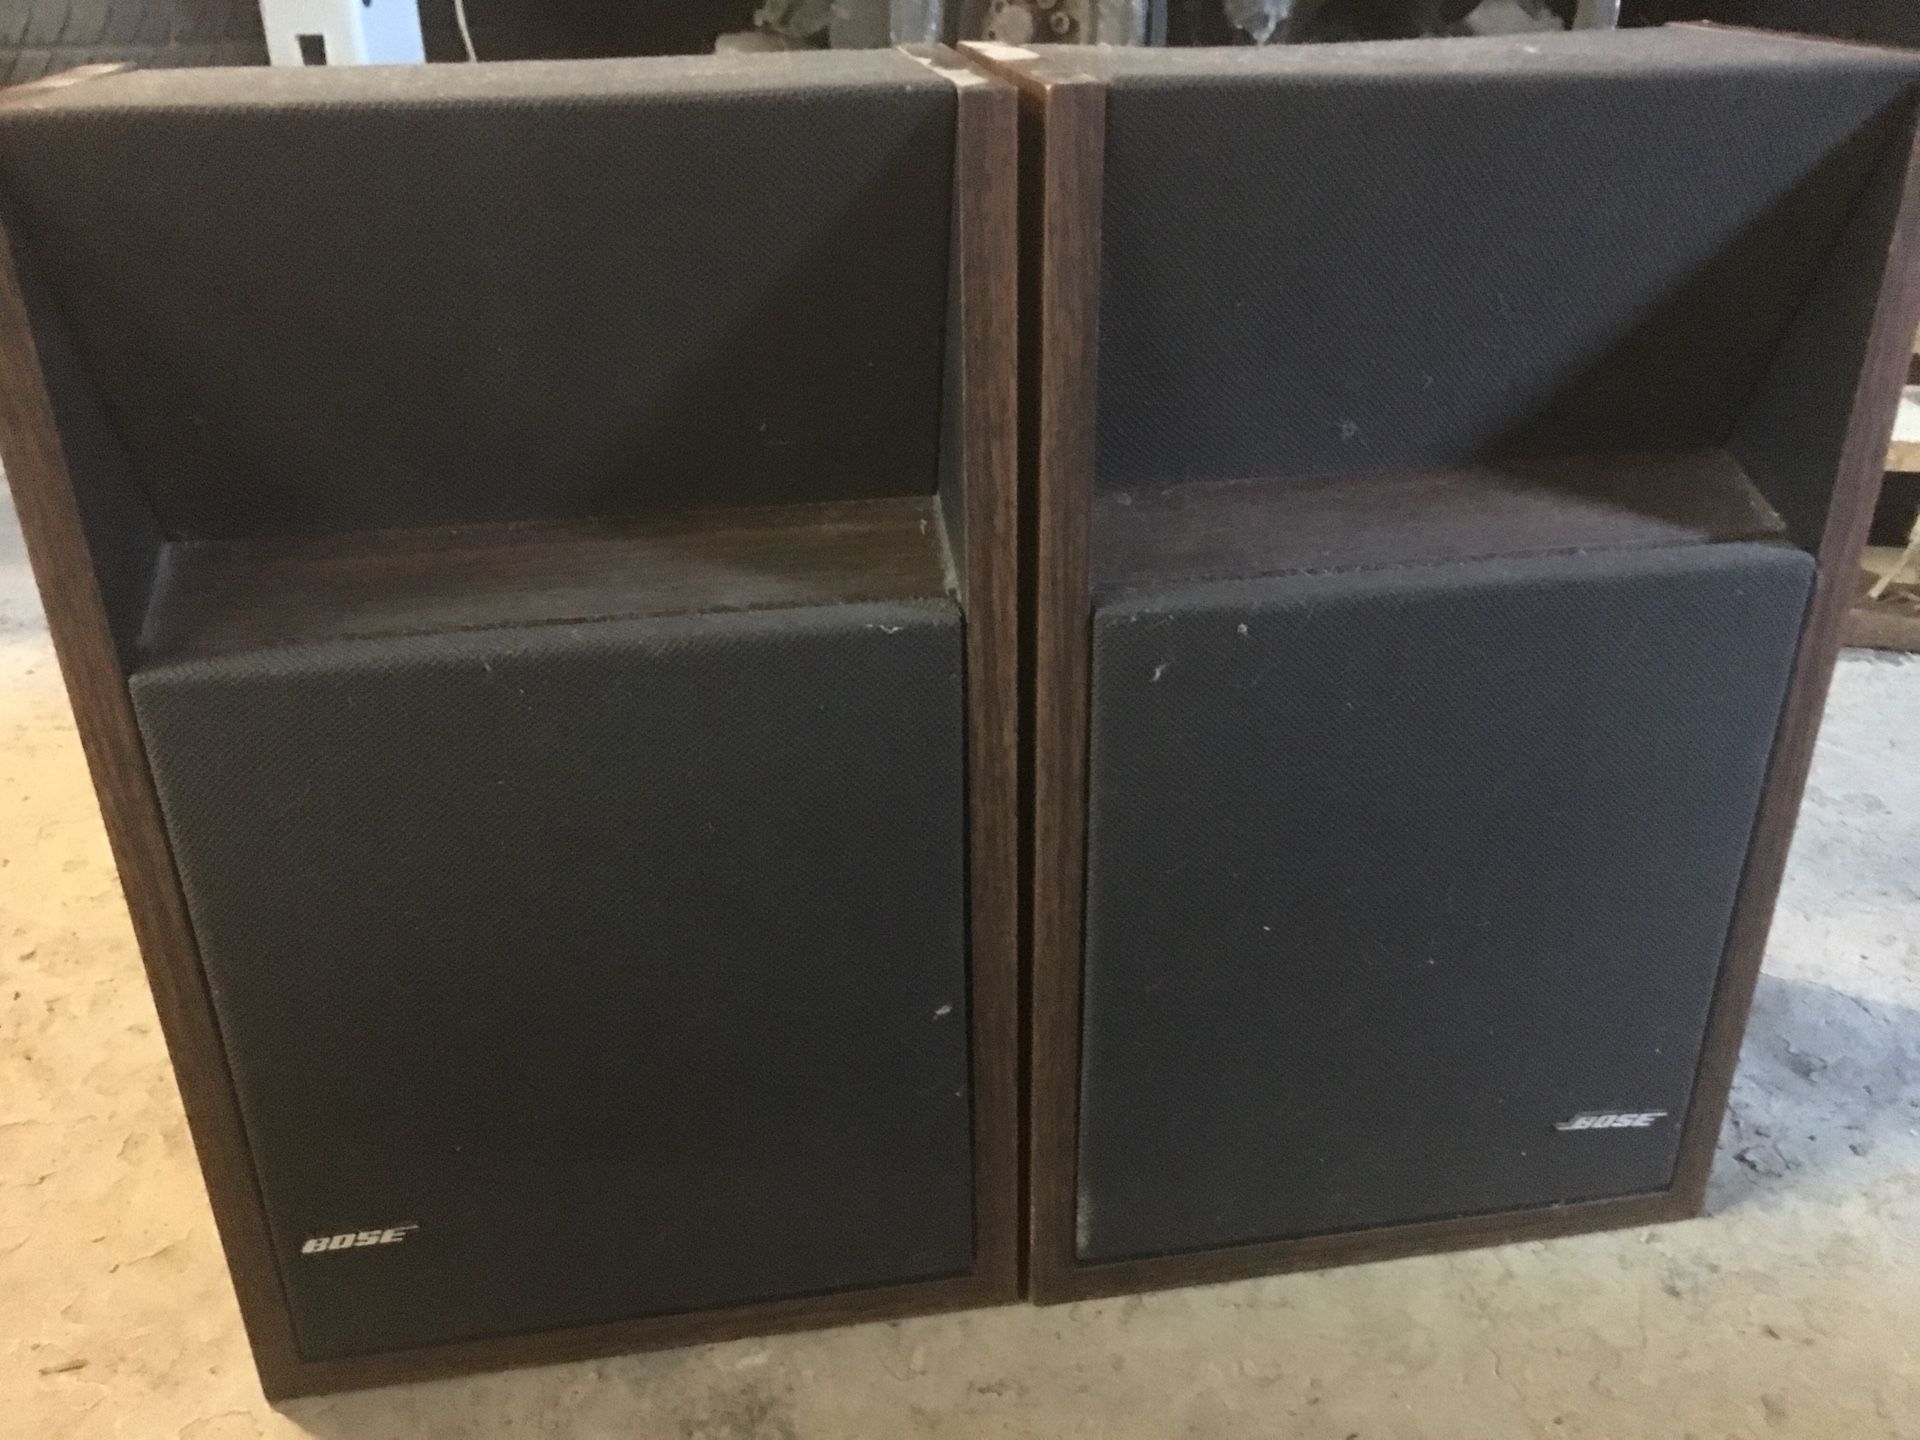 Bose 201 series ii speakers